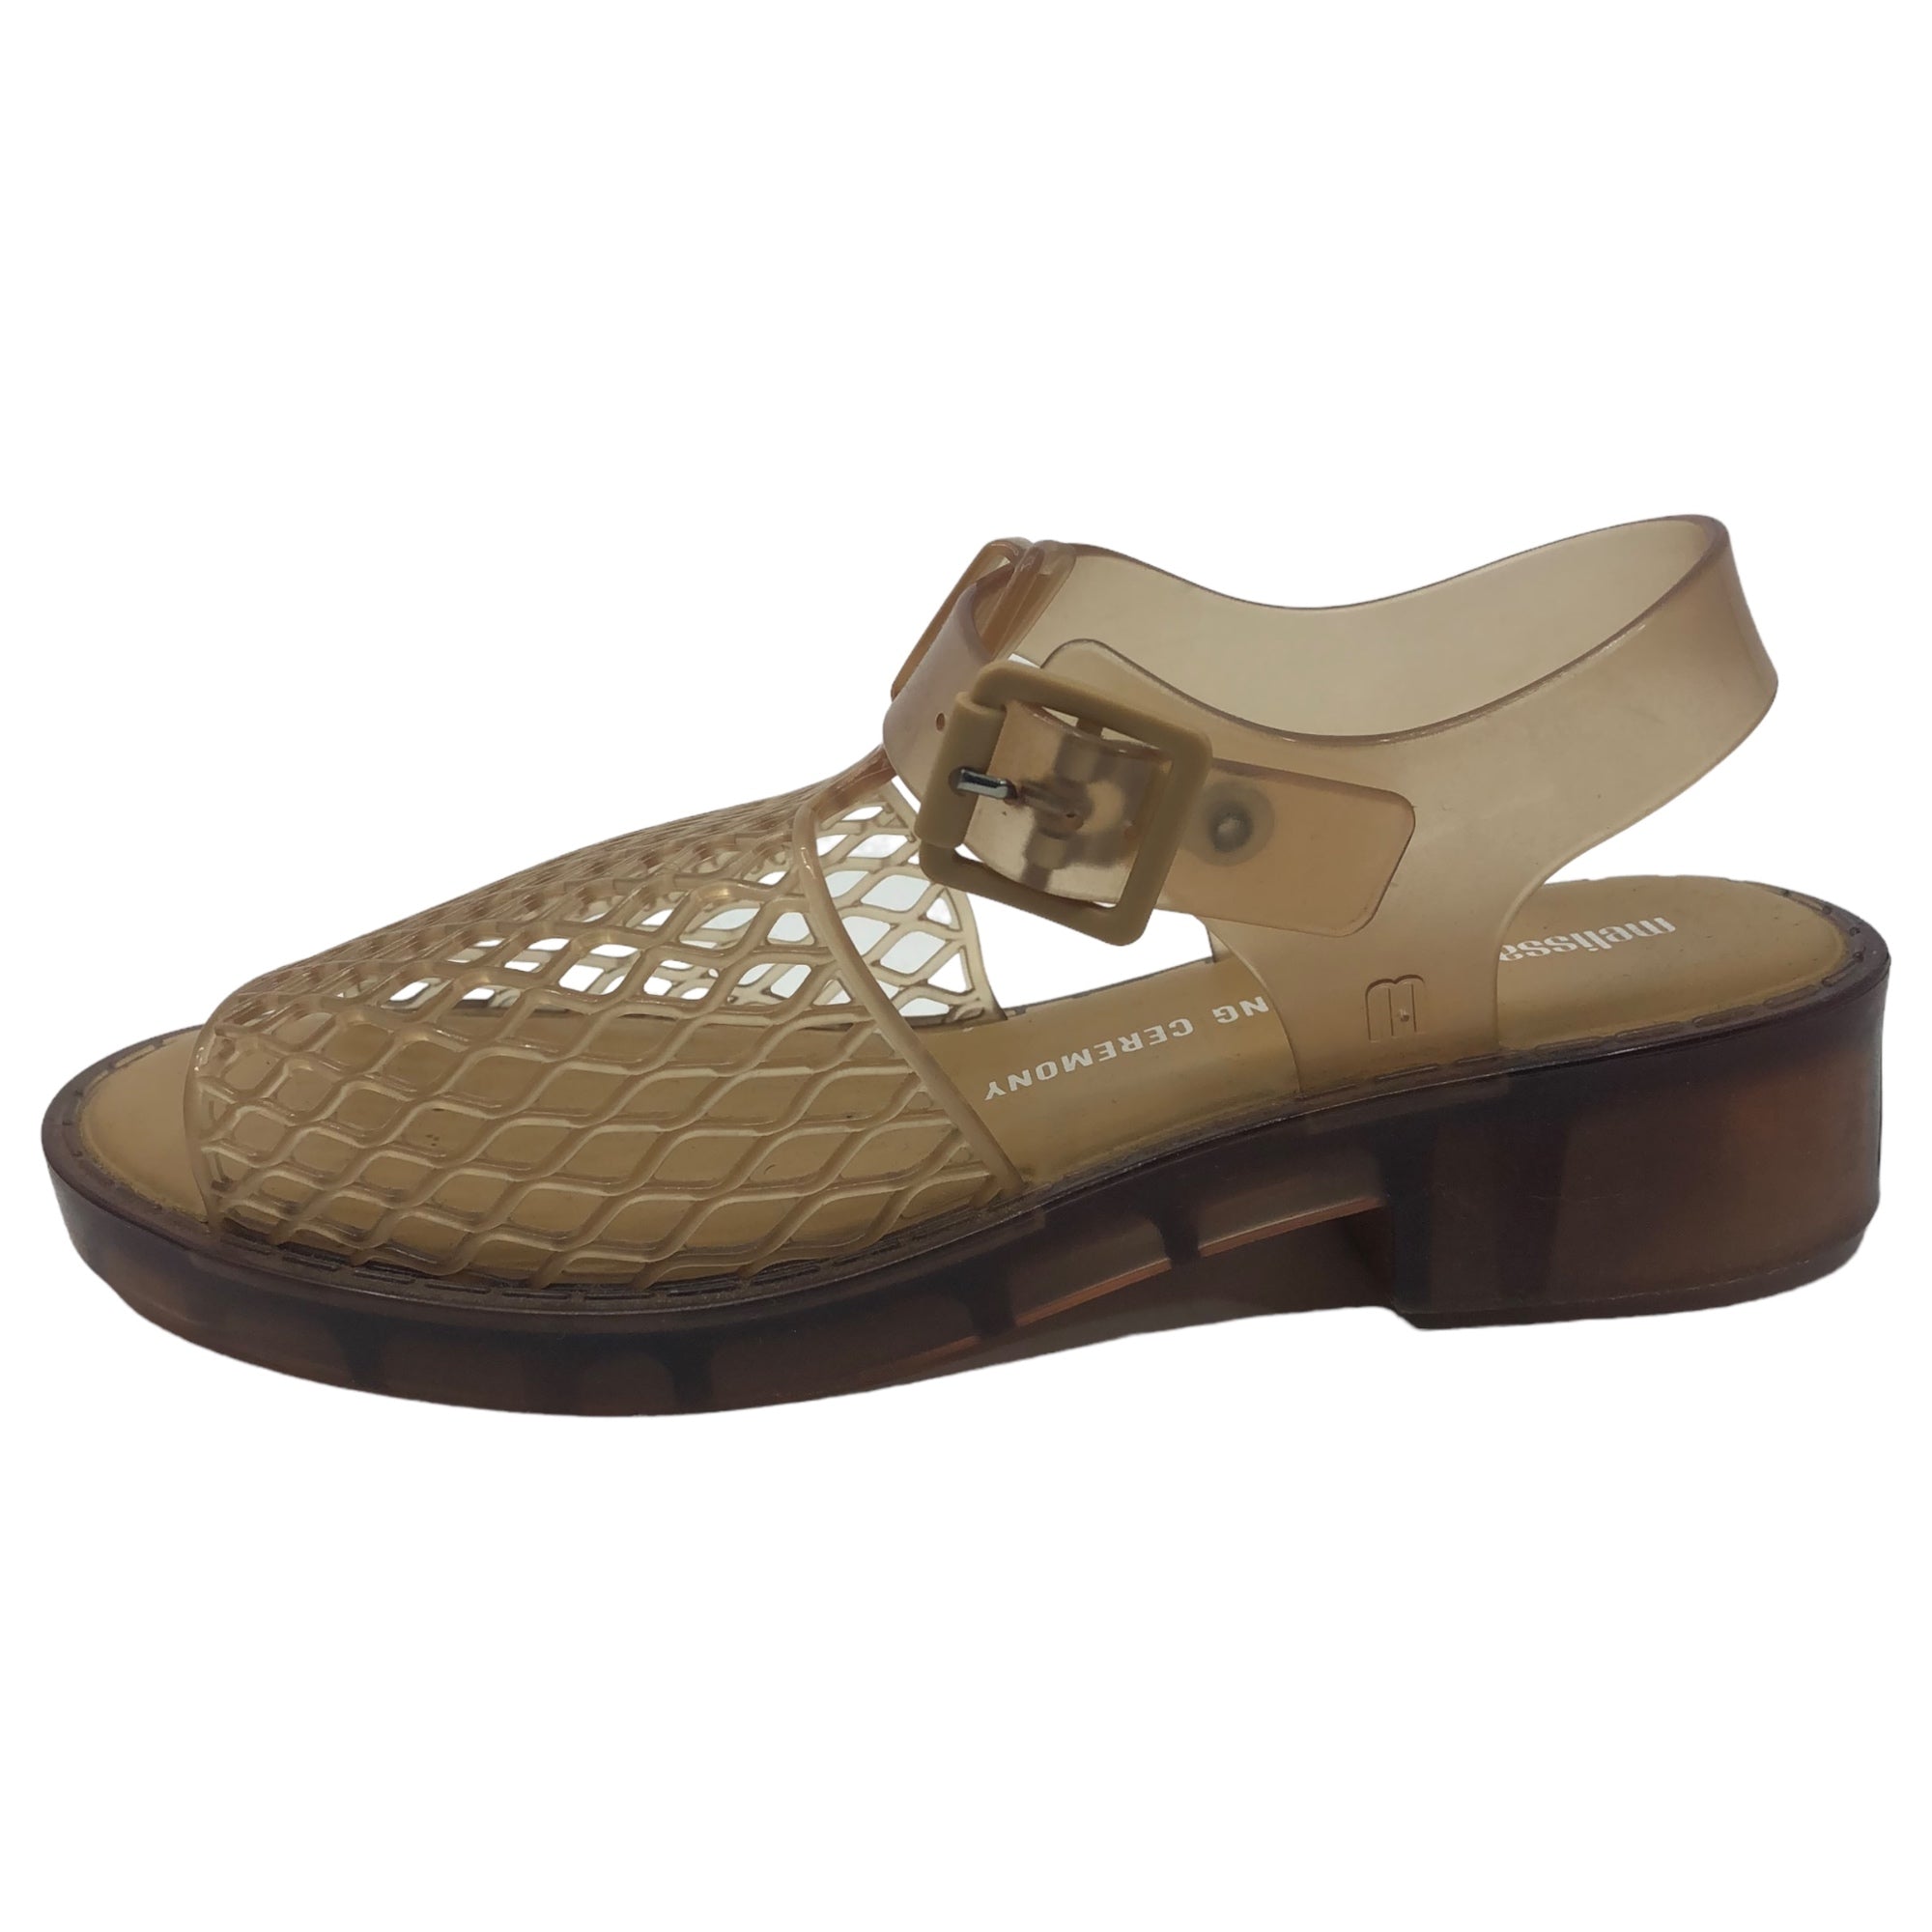 MELISSA×OPENING CEREMONY(メリッサ×オープニングセレモニー) vinyl sandals ビニール サンダル SIZE 24.0cm ベージュ